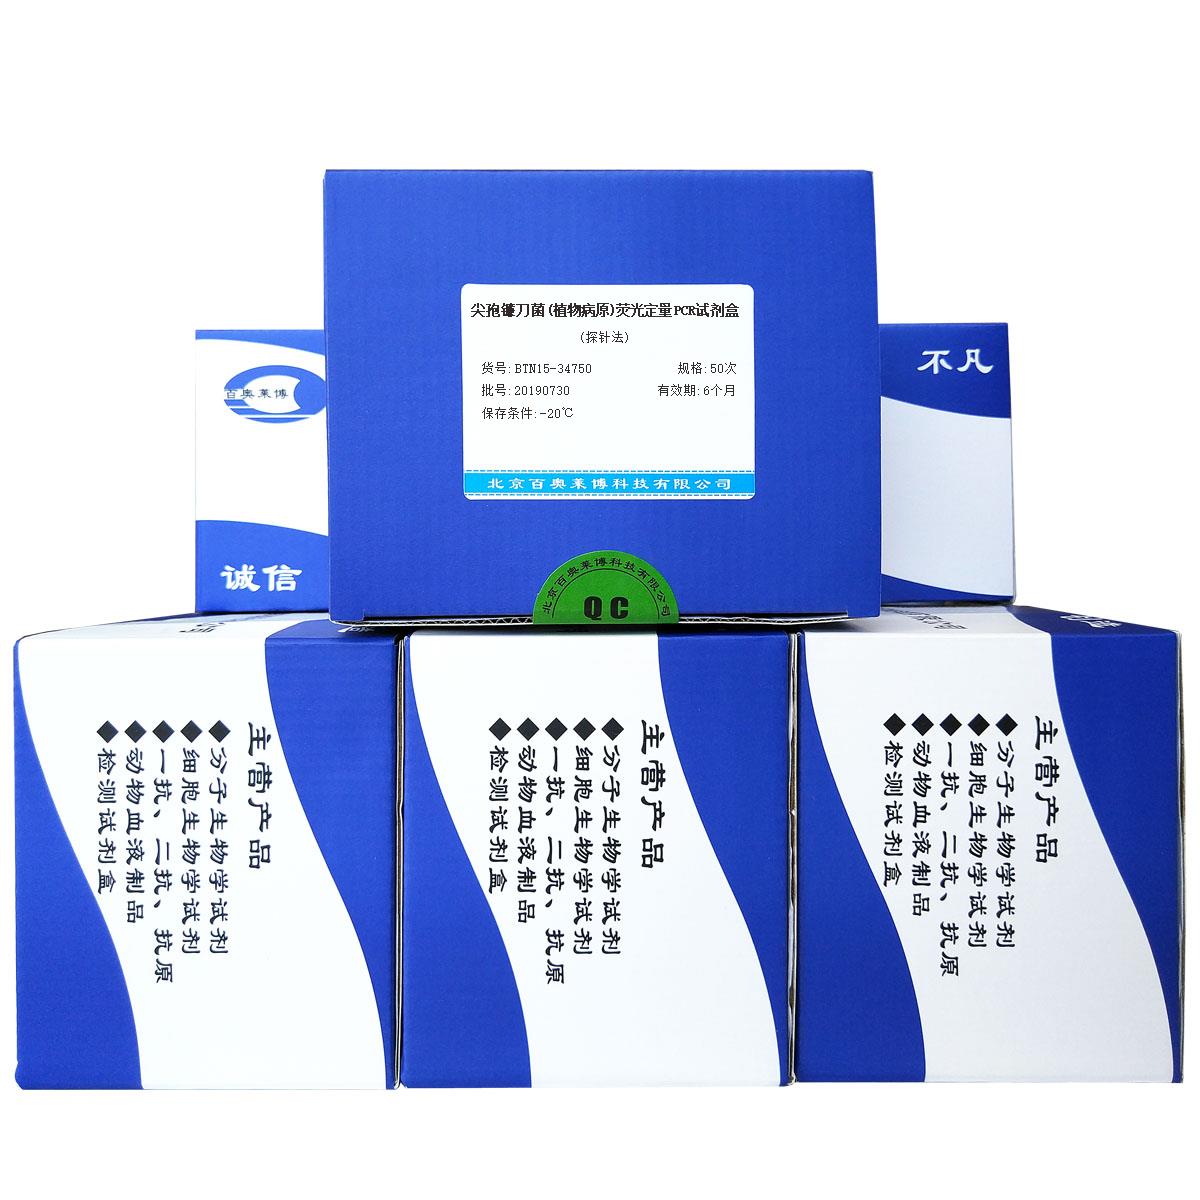 尖孢镰刀菌(植物病原)荧光定量PCR试剂盒(探针法)